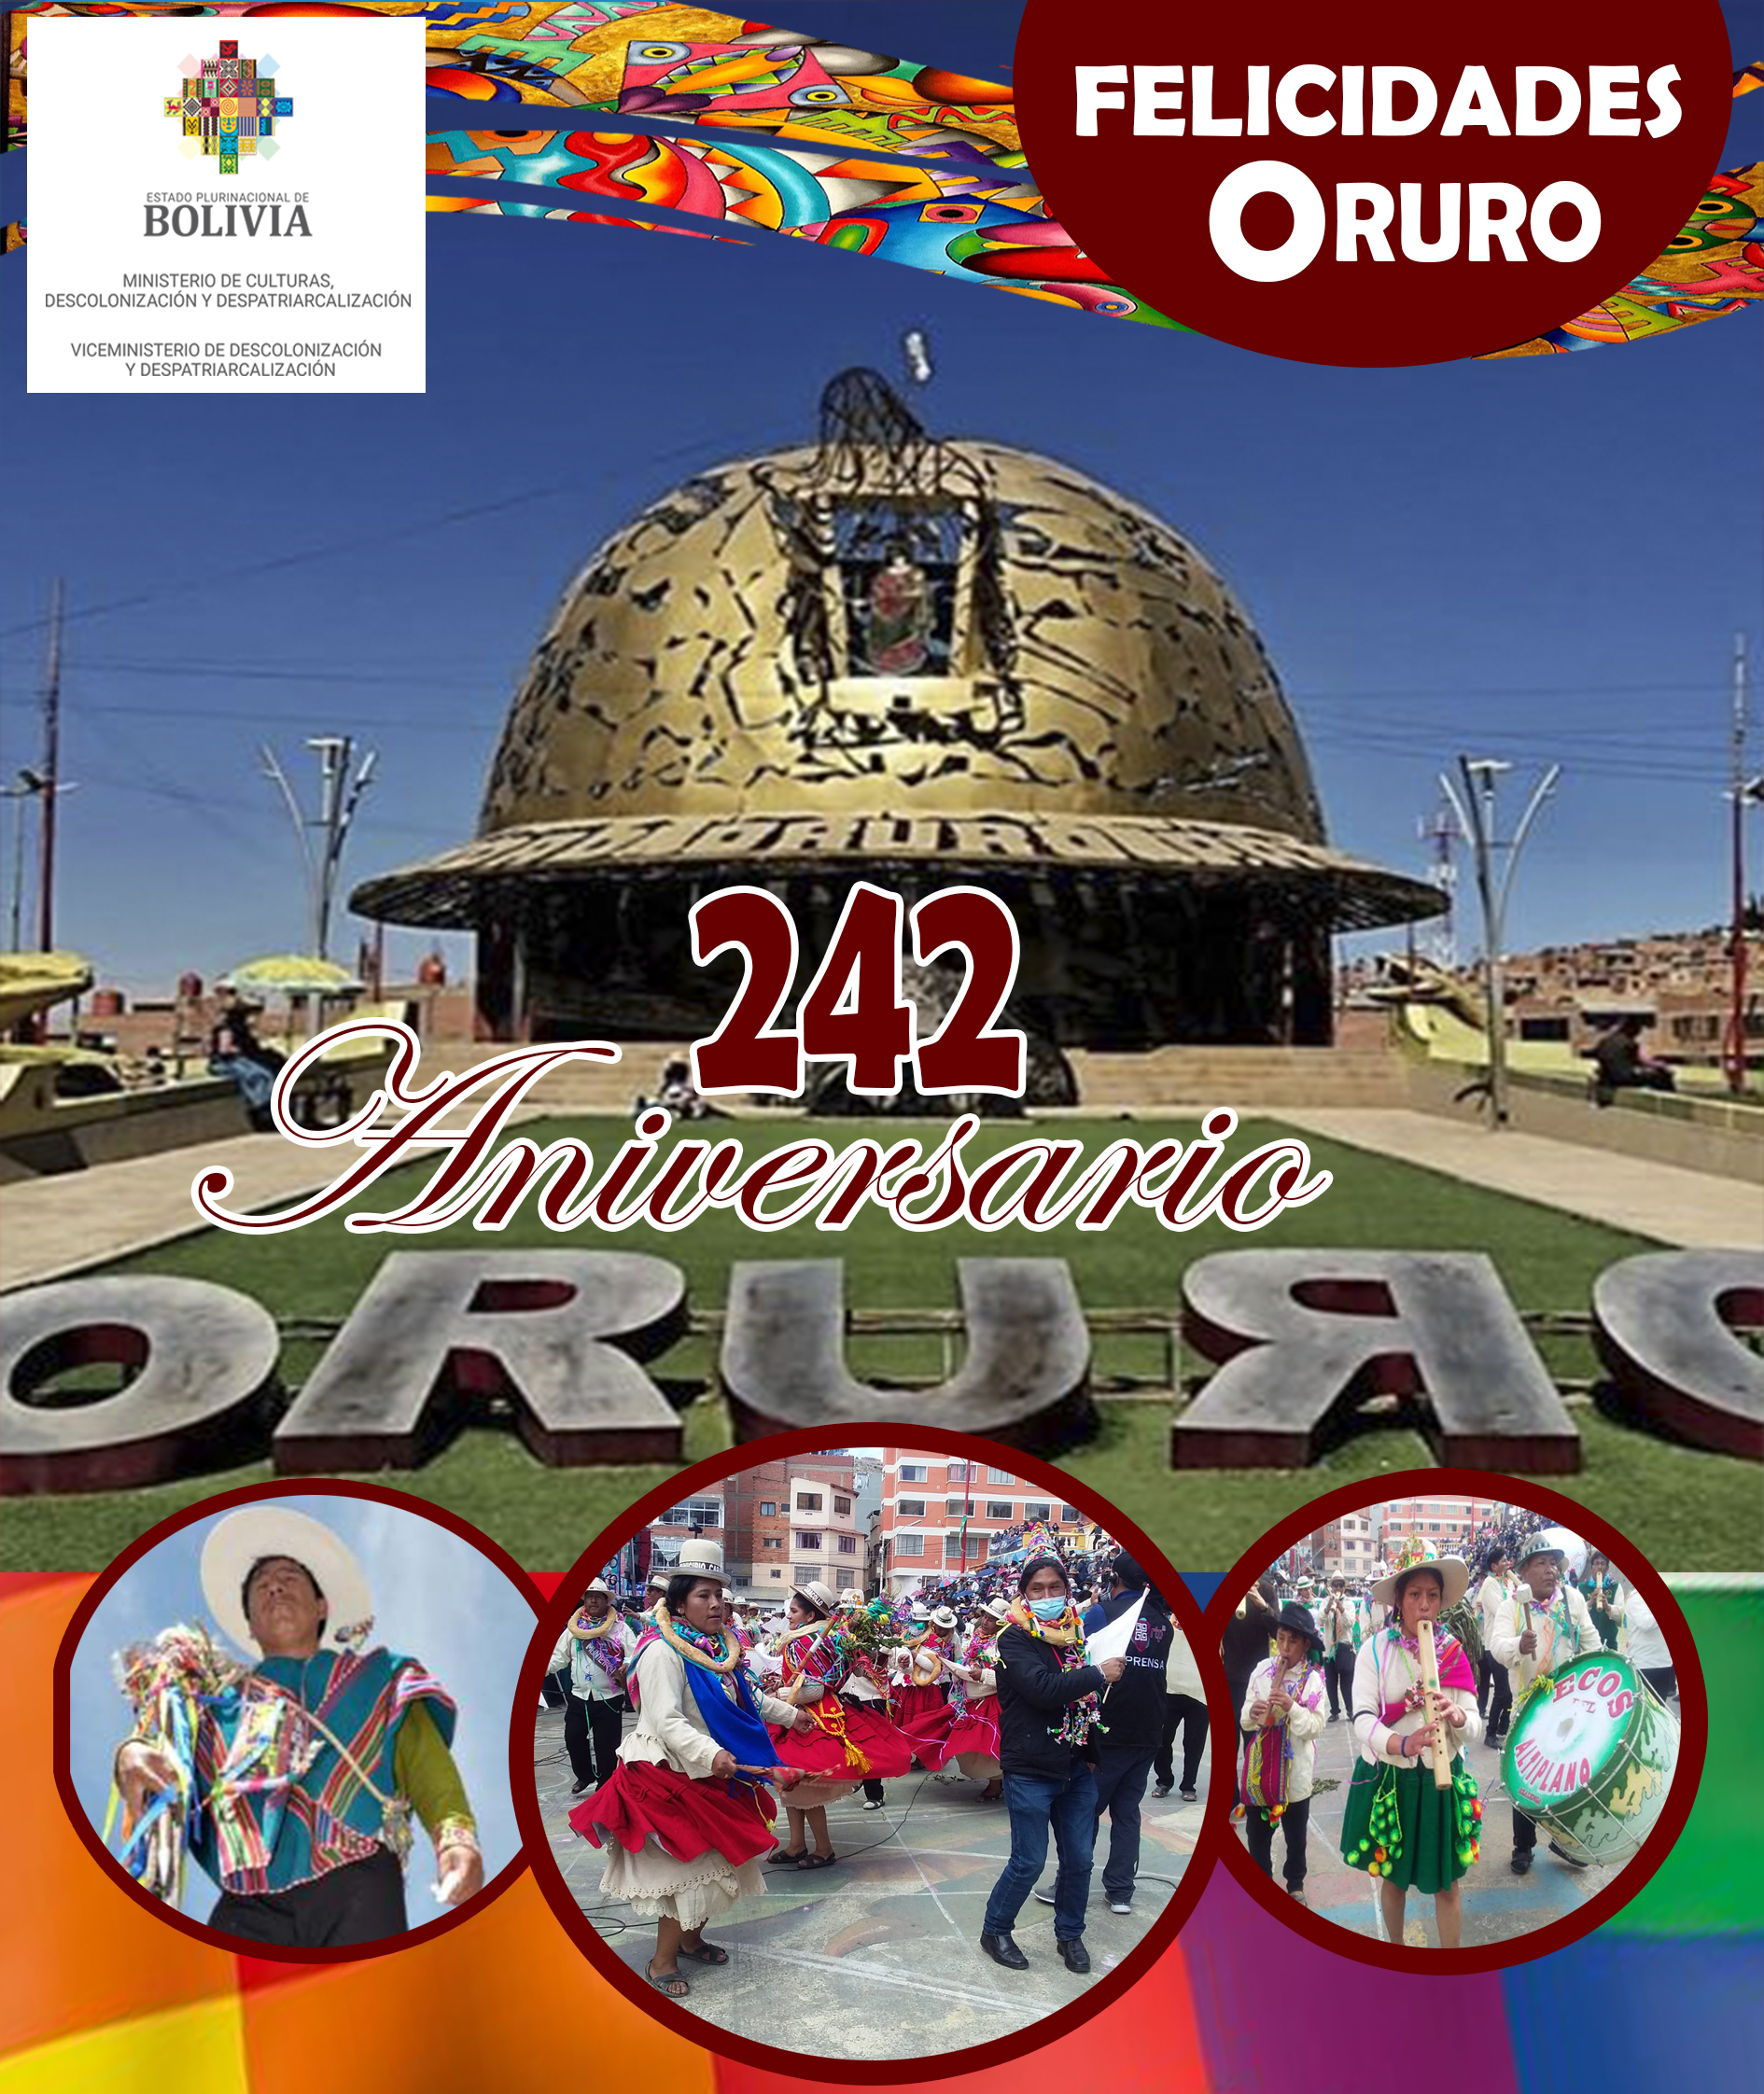 Desde el Viceministerio de Descolonización y Despatriarcalización, saludamos al pueblo Orureño en sus 242 Aniversario de su Grito Libertario